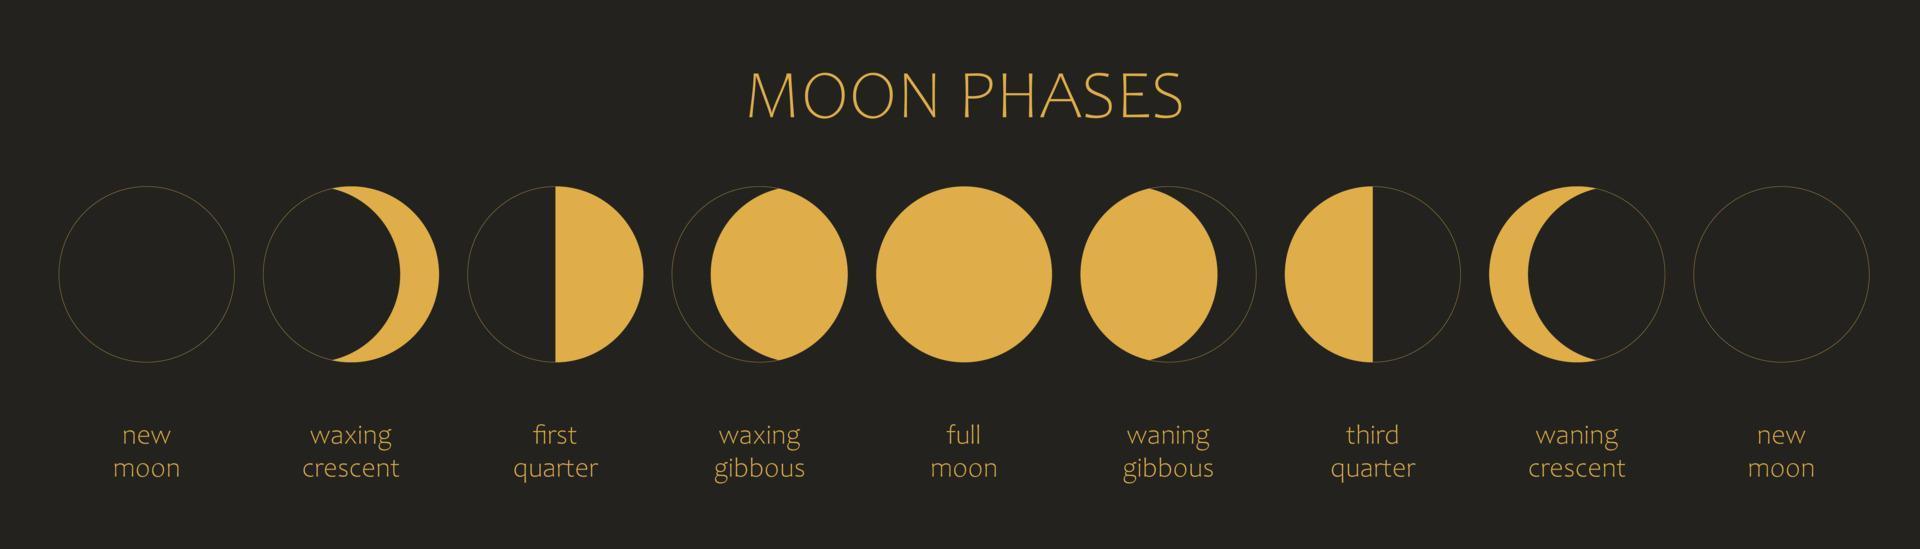 månen, månfaser på en svart bakgrund. hela cykeln från nymåne till fullmåne. astronomi och månkalender vektorillustration vektor